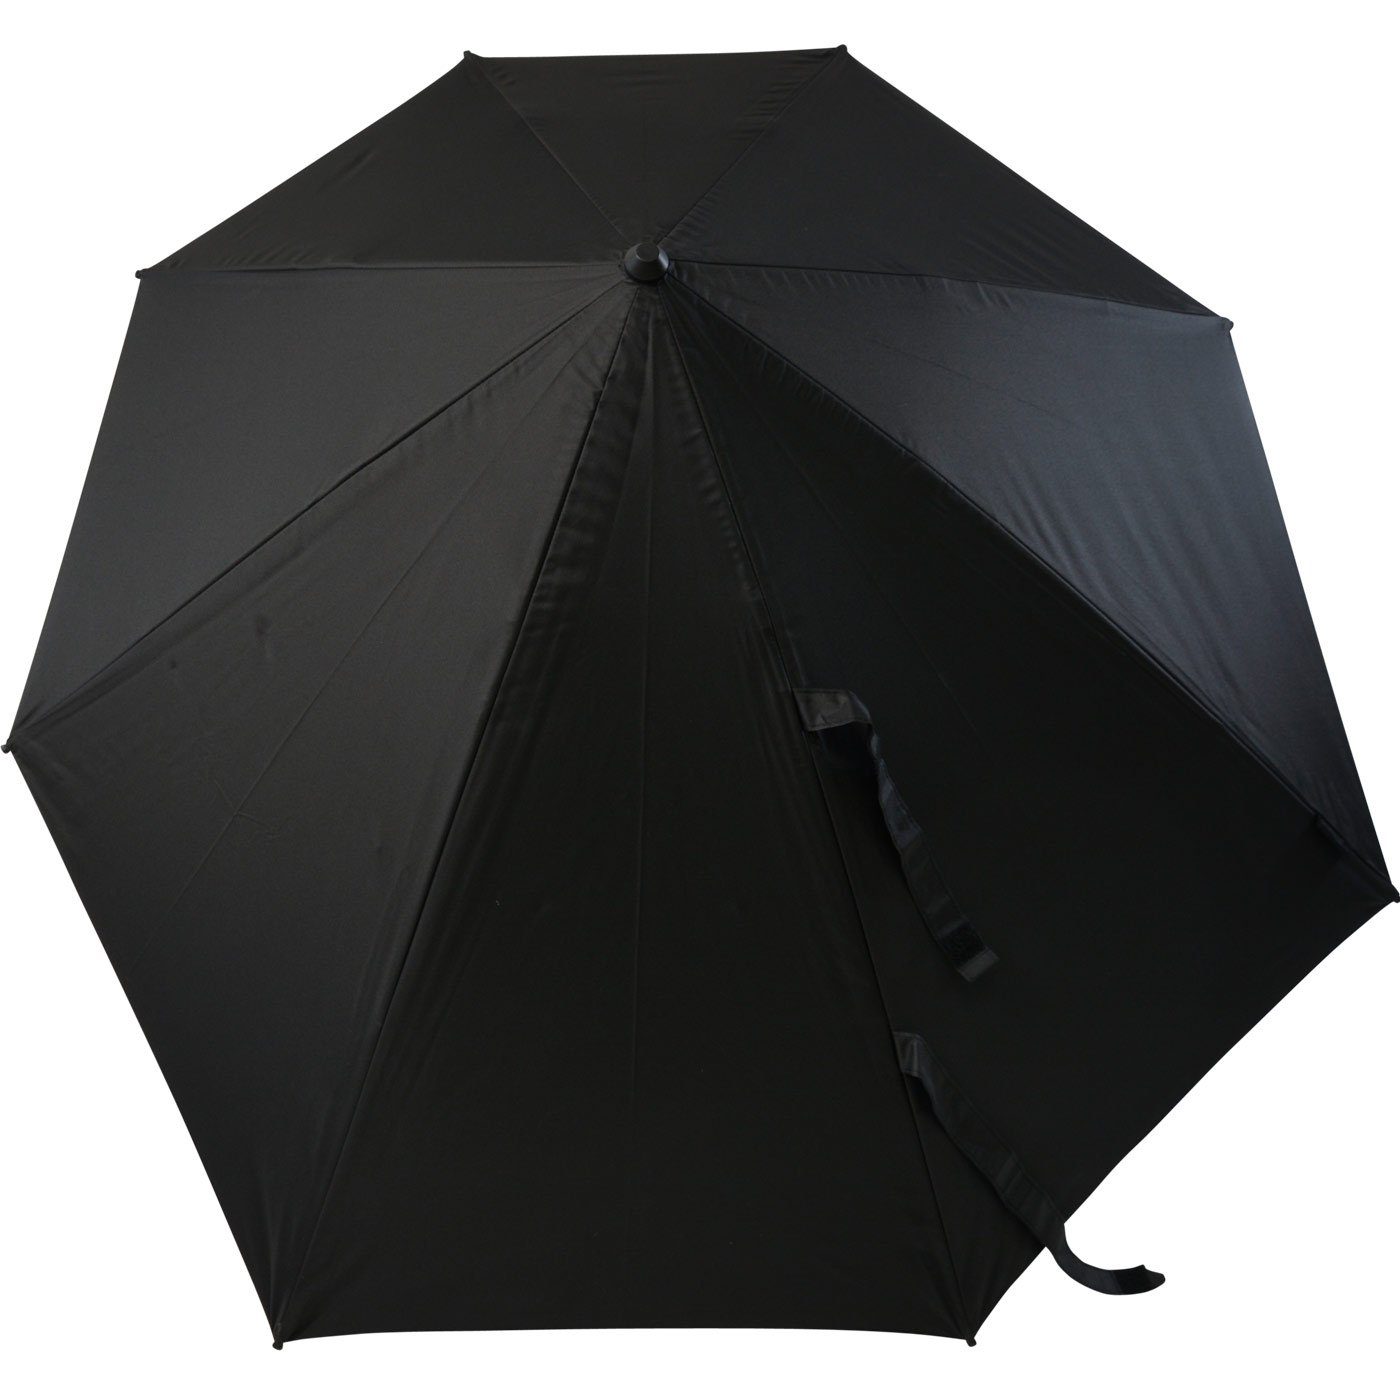 Impliva Stockregenschirm STORMaxi seine zu den aus in Schirm besondere Sturmschirm hält Form aerodynamischer durch Wind, bis 80 Metallic, der schwarz-gold sich km/h dreht